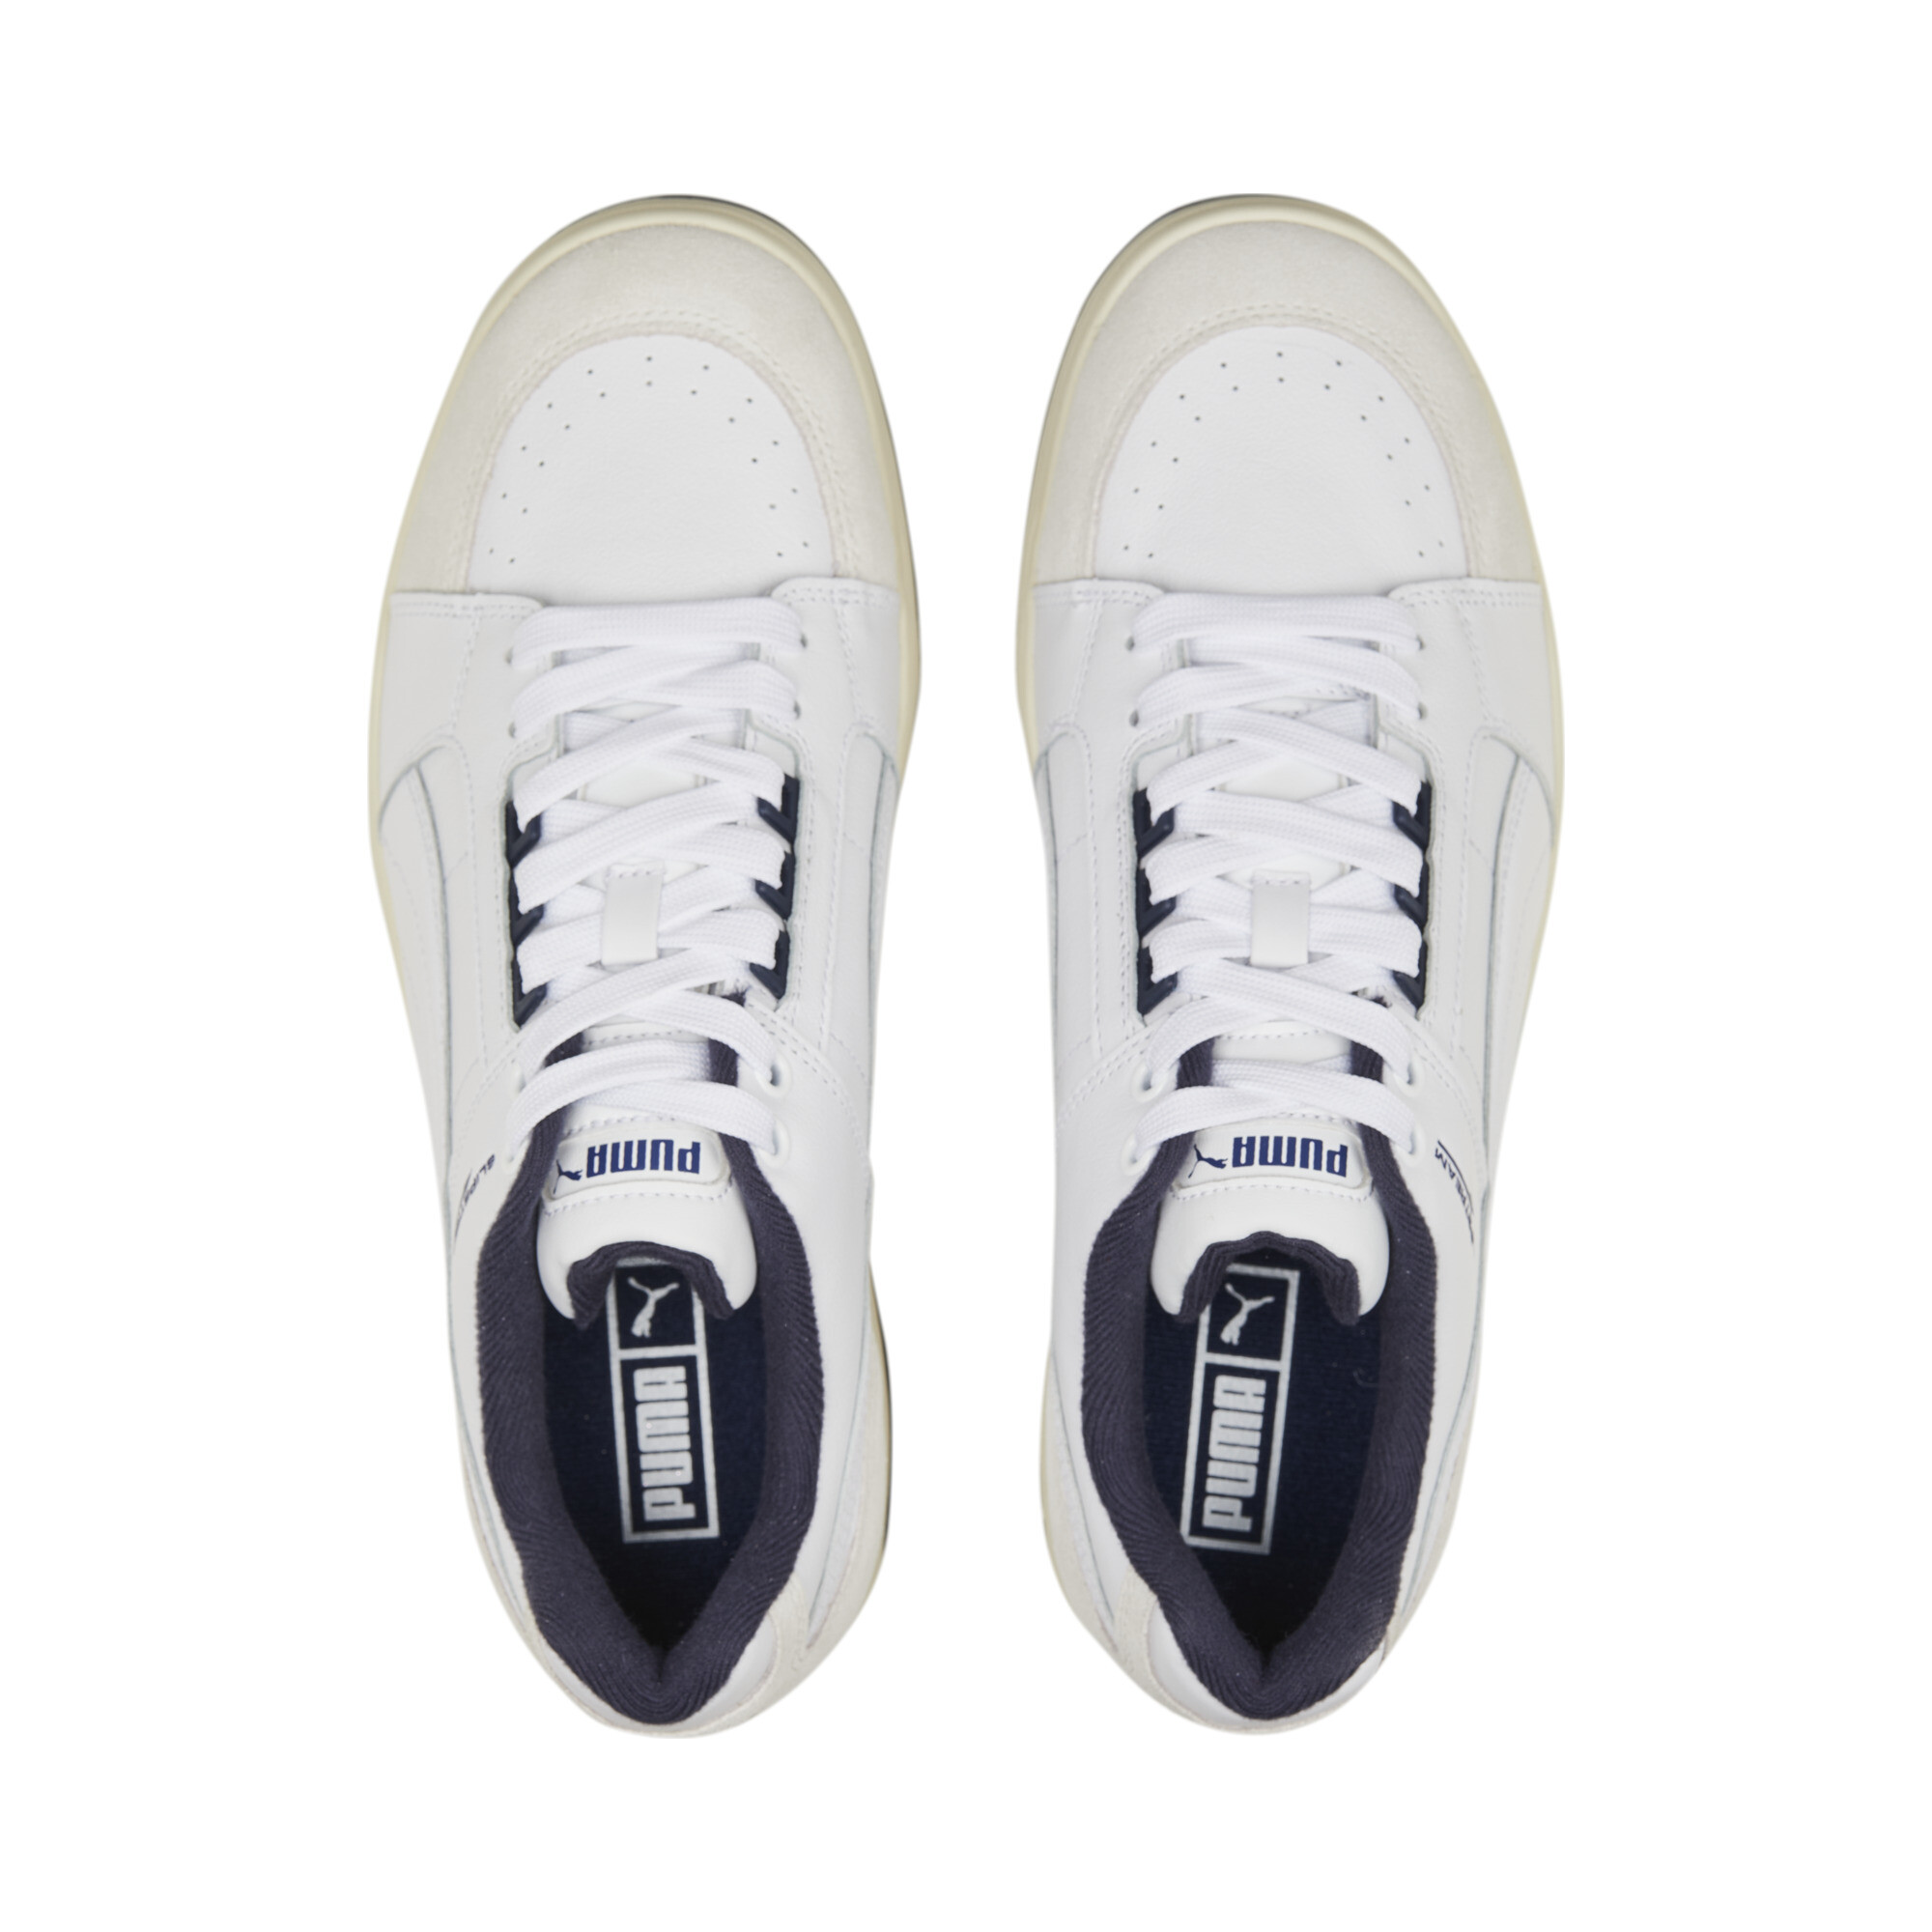 Puma Slipstream Lo Retro Trainers, White, Size 35.5, Shoes